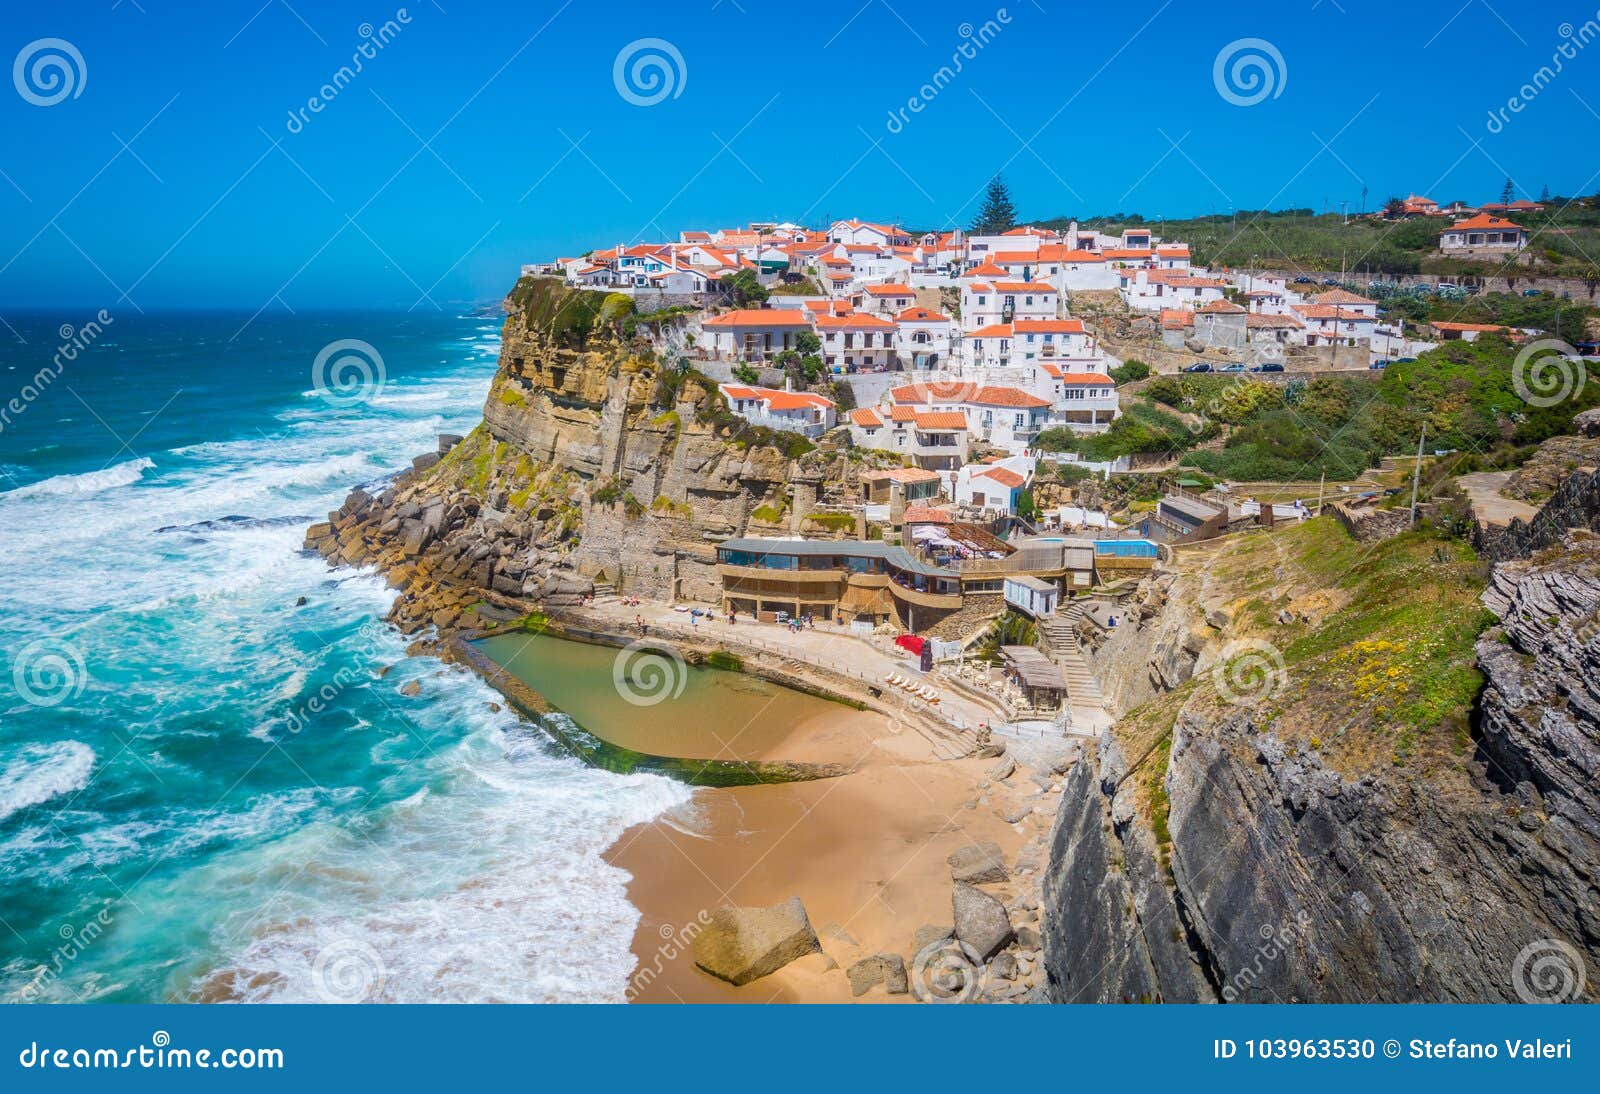 panoramic view of azenhas do mar, sintra, portugal